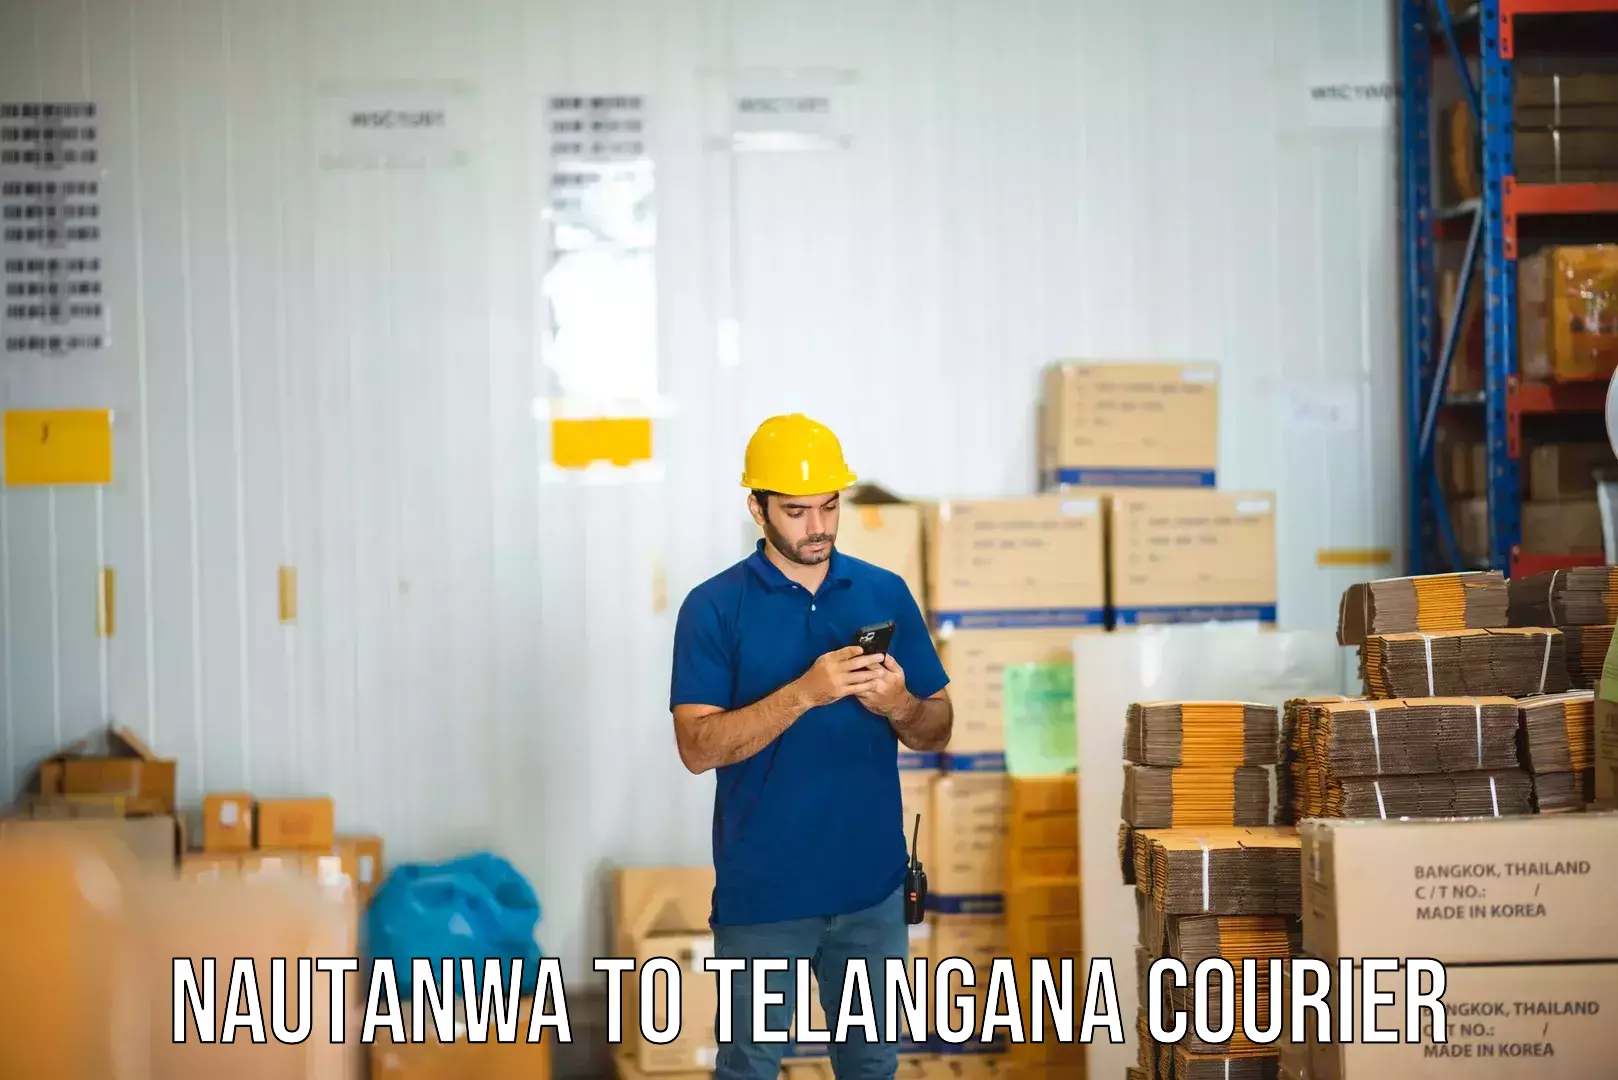 Tracking updates Nautanwa to Veenavanka